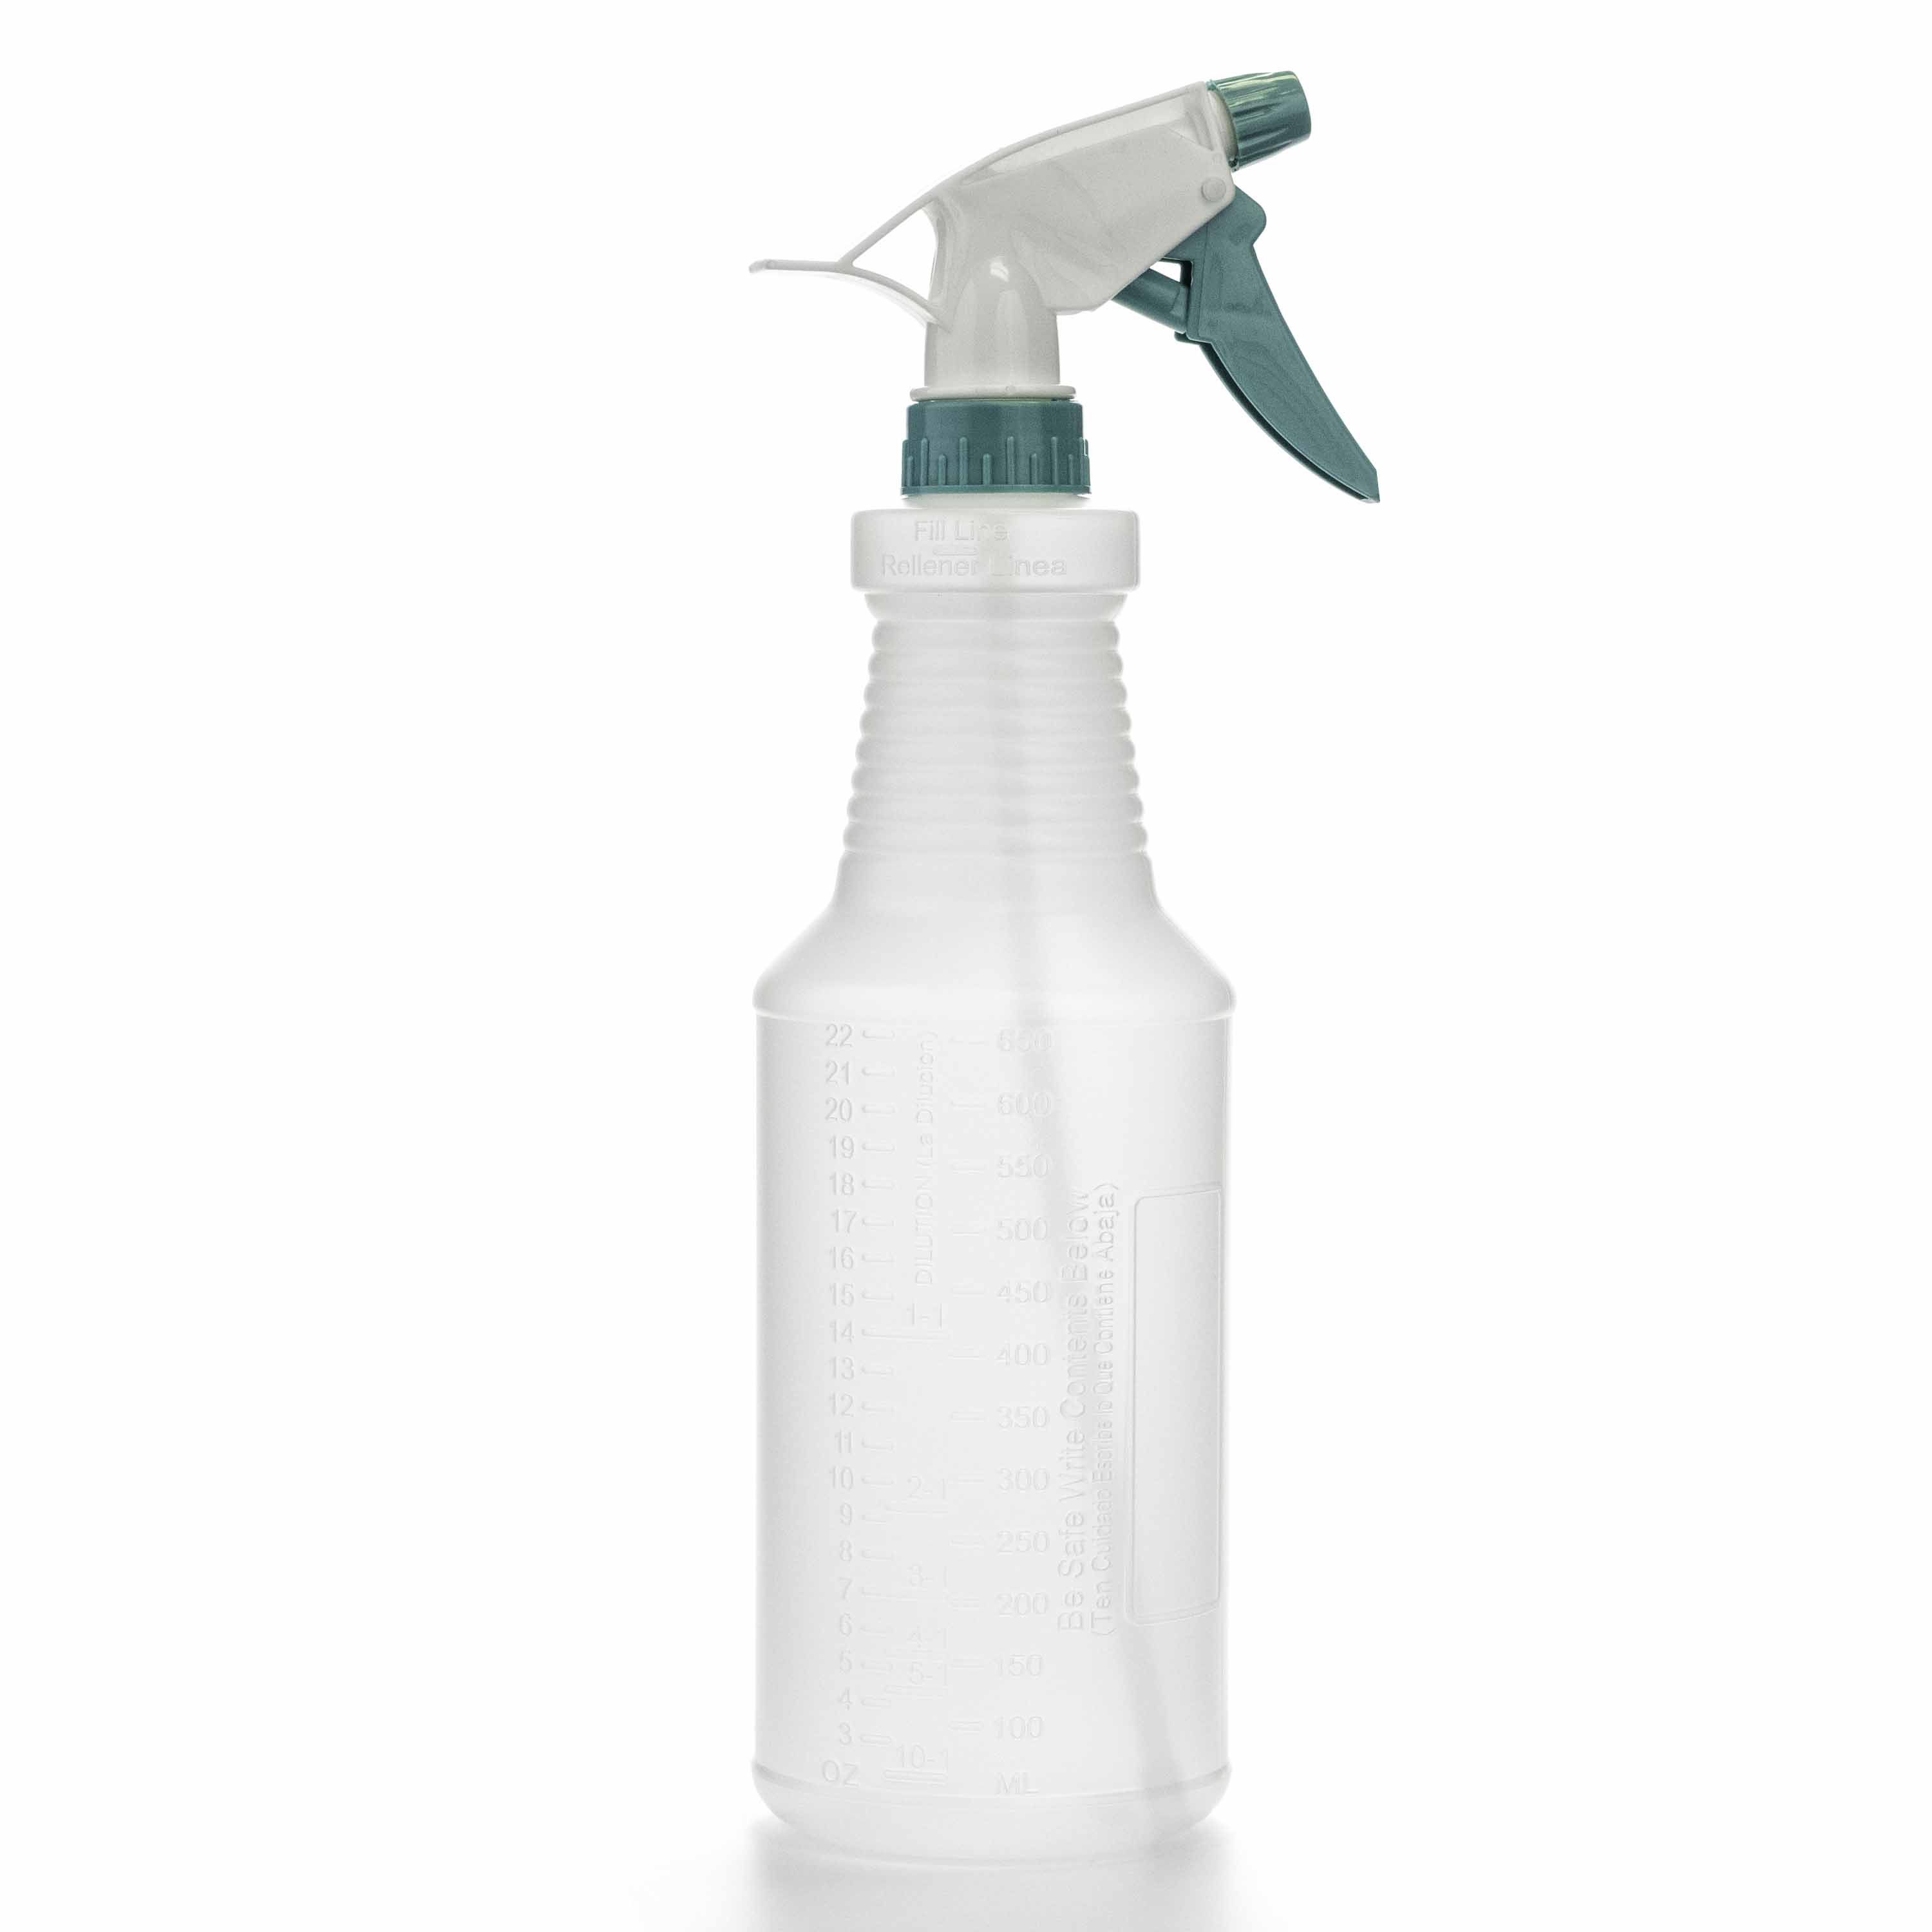 Kwazar 084110 Compressed Air Spray Bottle, 1.5 L, White